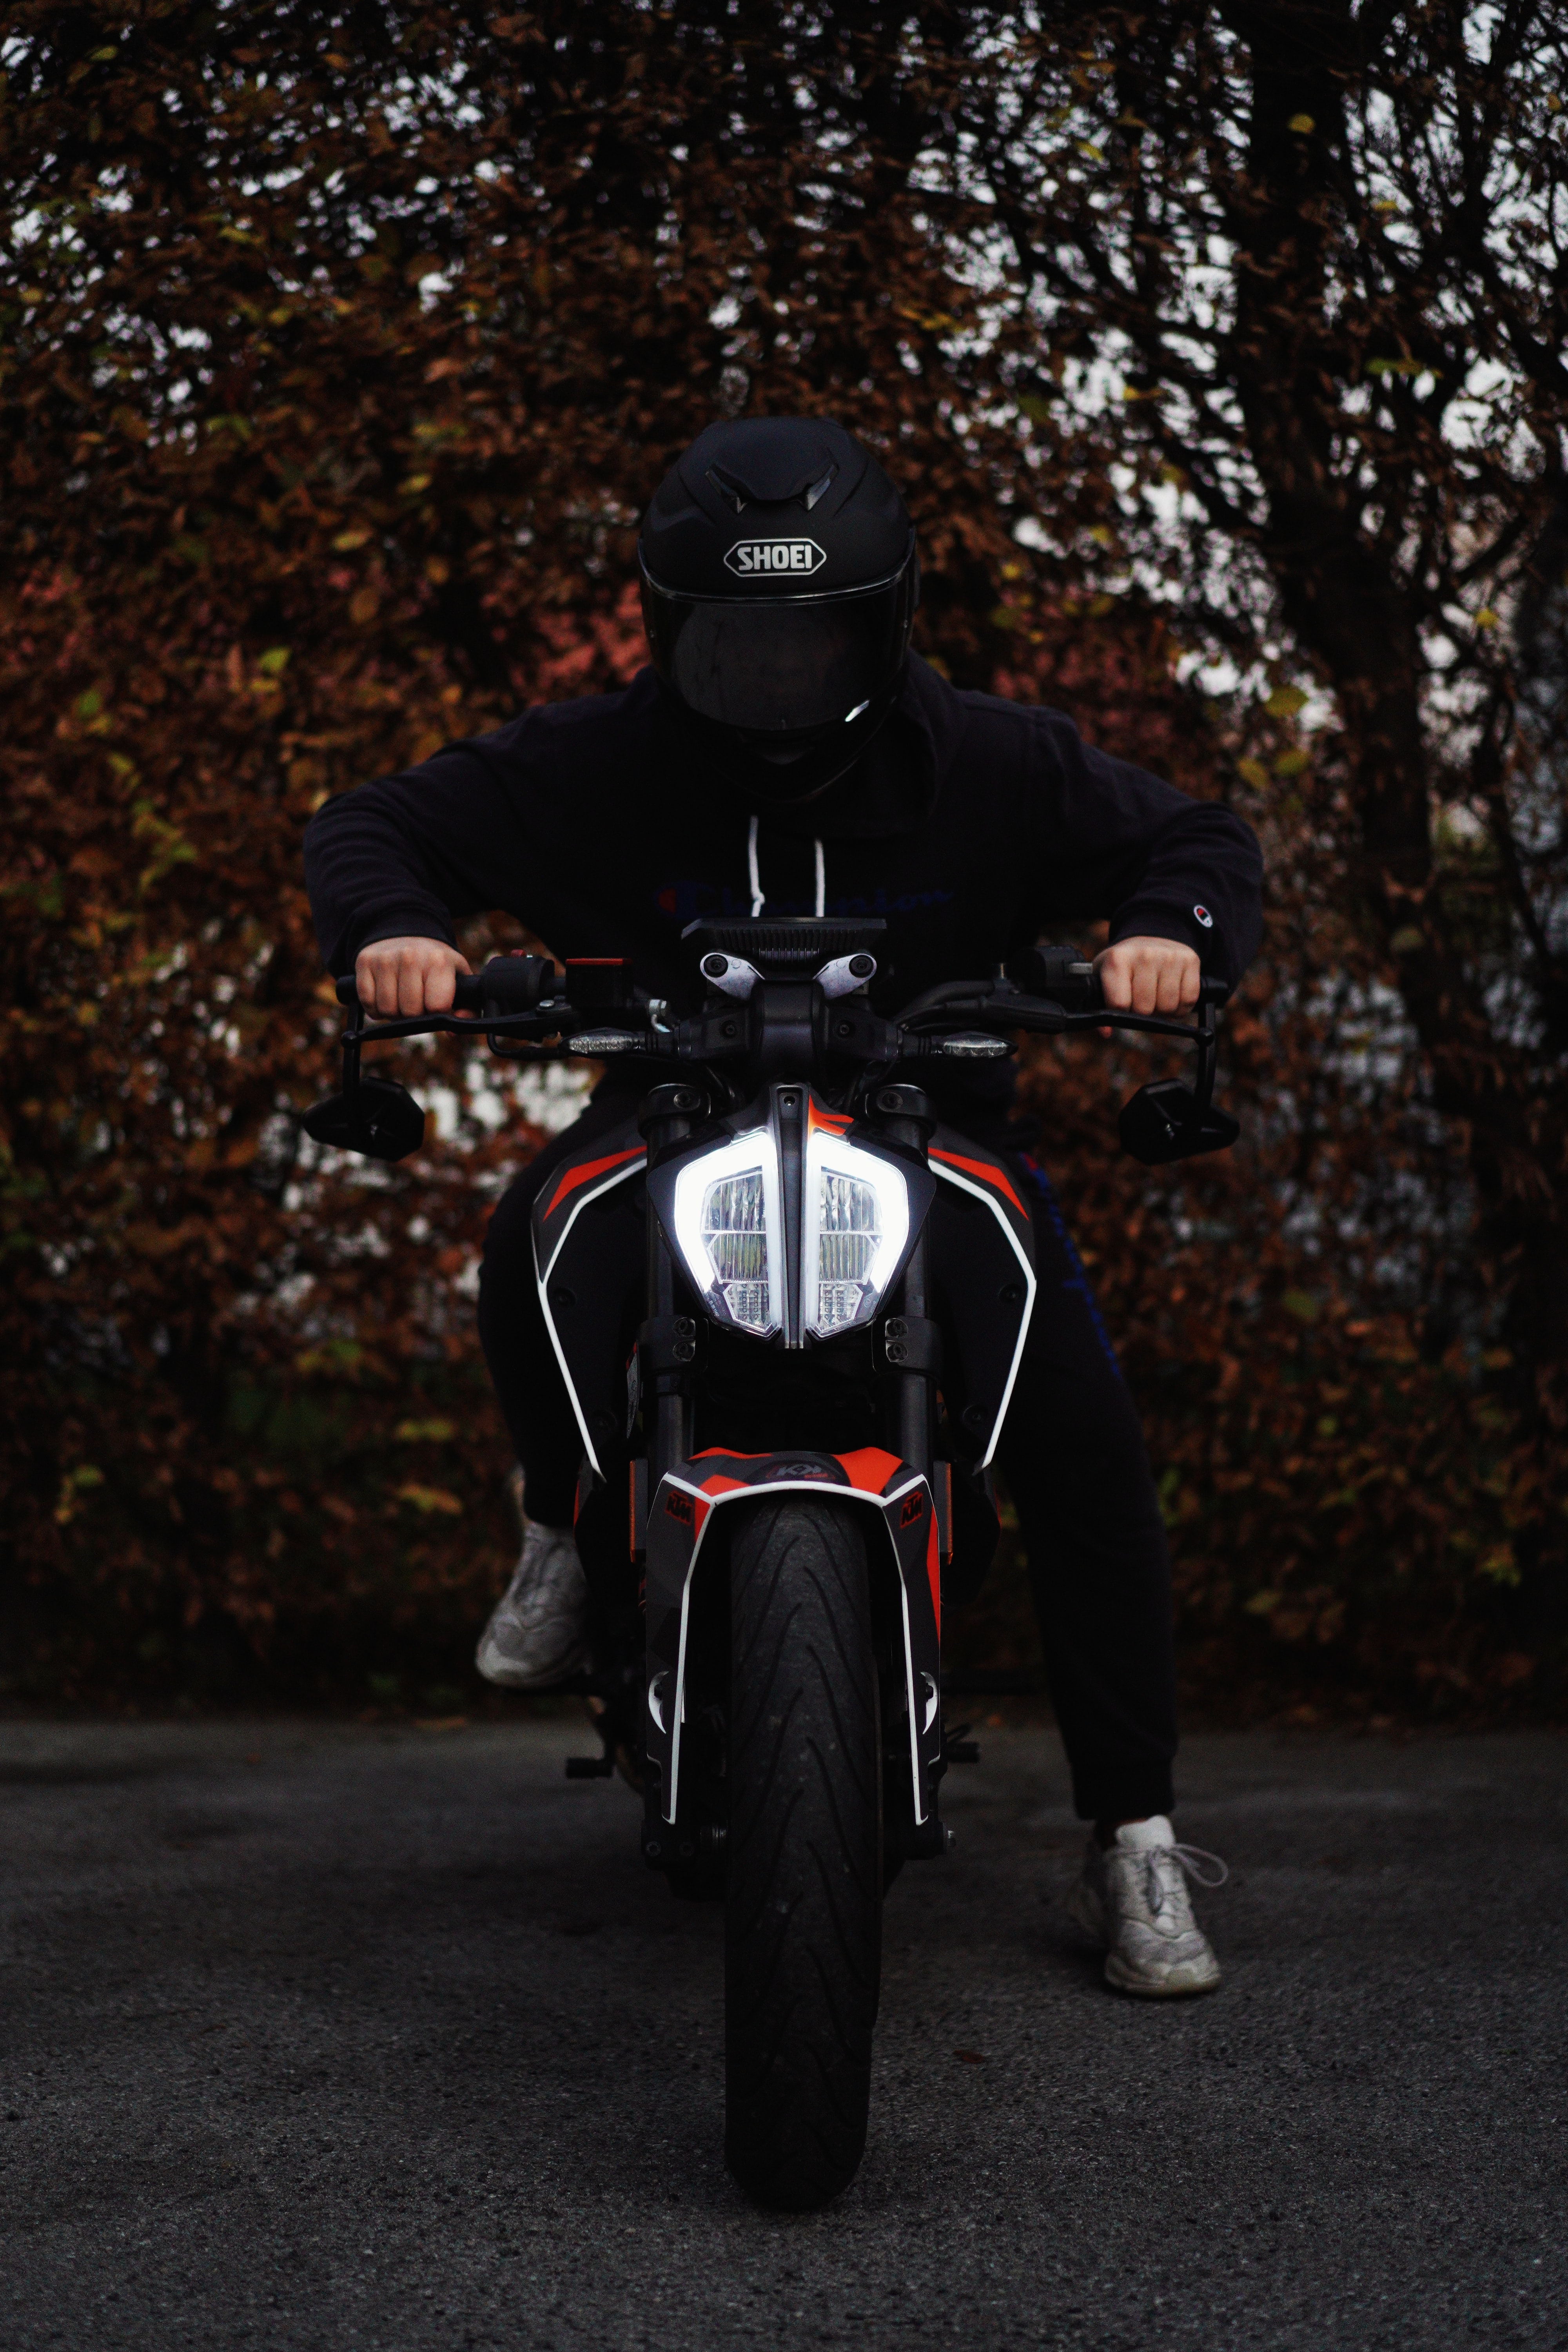 Free HD bike, motorcycles, black, motorcyclist, helmet, motorcycle